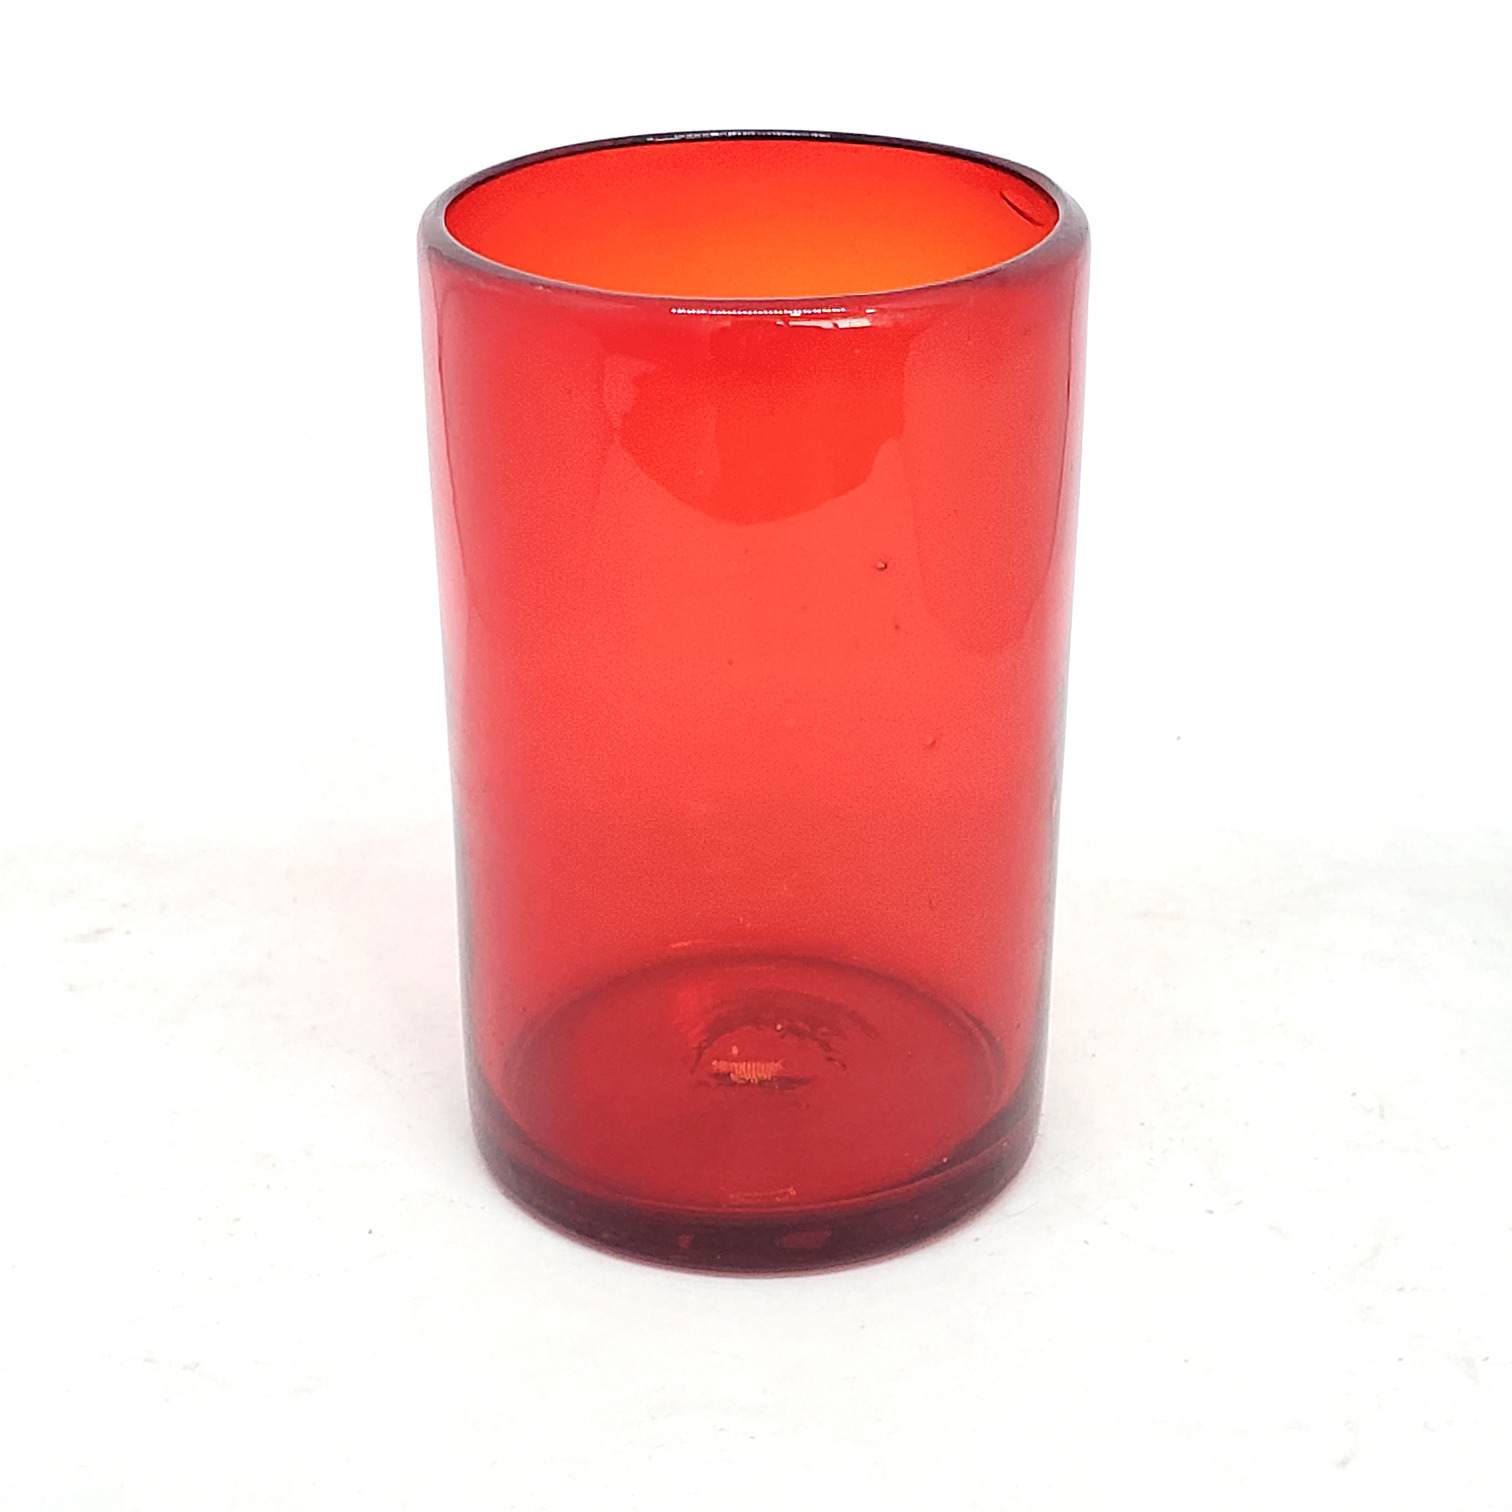 VIDRIO SOPLADO / vasos grandes color rojo rub, 14 oz, Vidrio Reciclado, Libre de Plomo y Toxinas